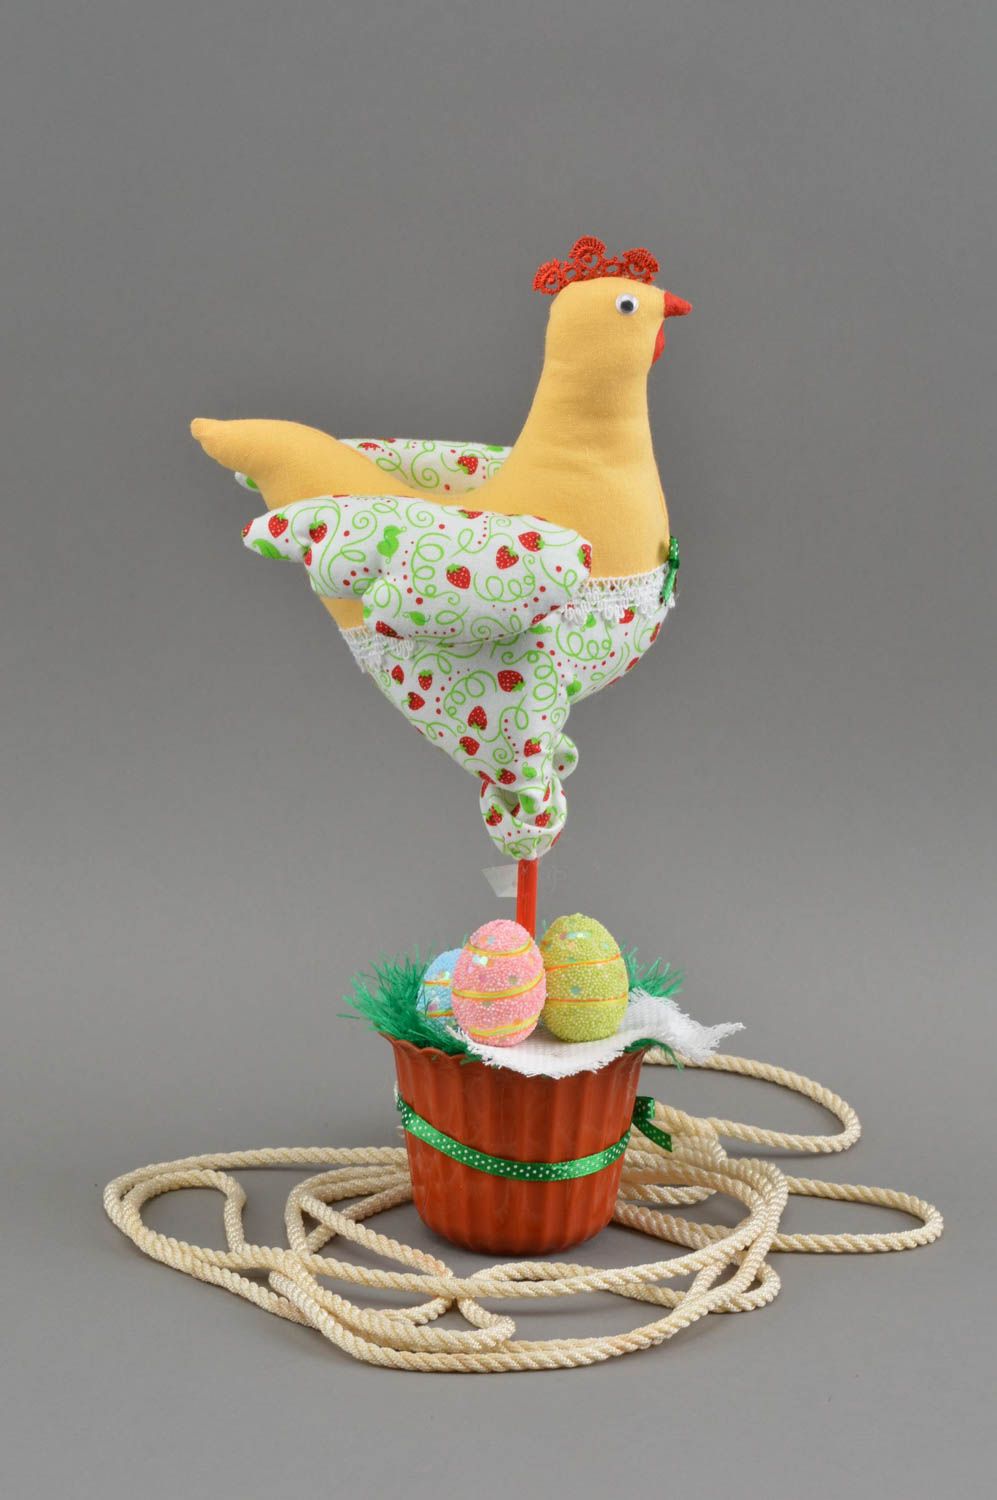 Интерьерная игрушка в виде курицы настольный пасхальный декор ручной работы фото 2